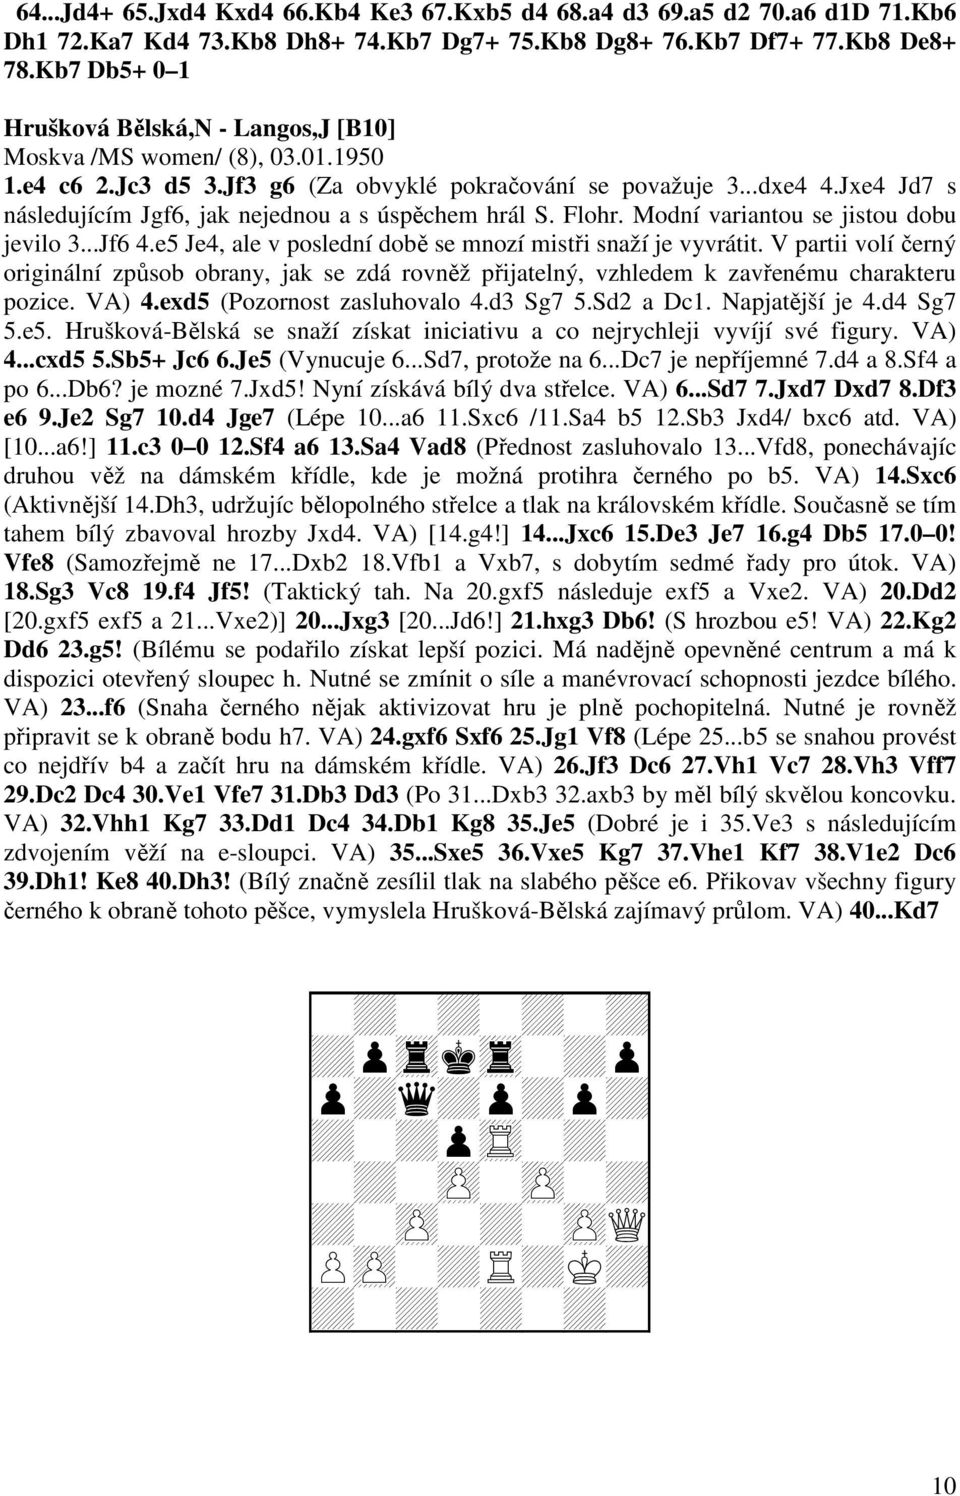 Jxe4 Jd7 s následujícím Jgf6, jak nejednou a s úspěchem hrál S. Flohr. Modní variantou se jistou dobu jevilo 3...Jf6 4.e5 Je4, ale v poslední době se mnozí mistři snaží je vyvrátit.